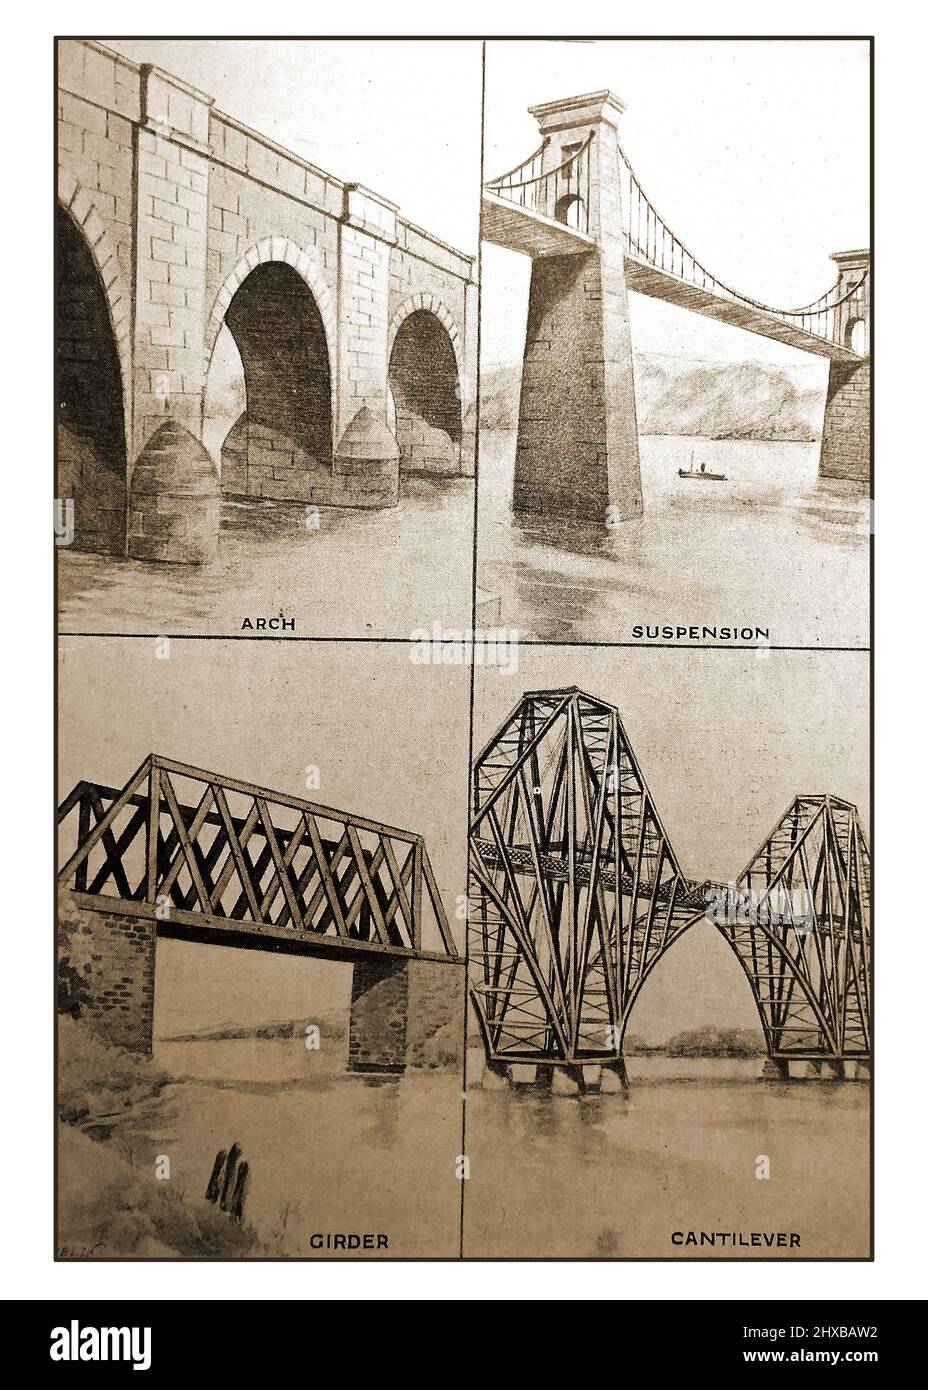 Une image britannique ancienne illustrant différents types de construction de pont - arche, suspension, poutre et porte-à-faux. Banque D'Images